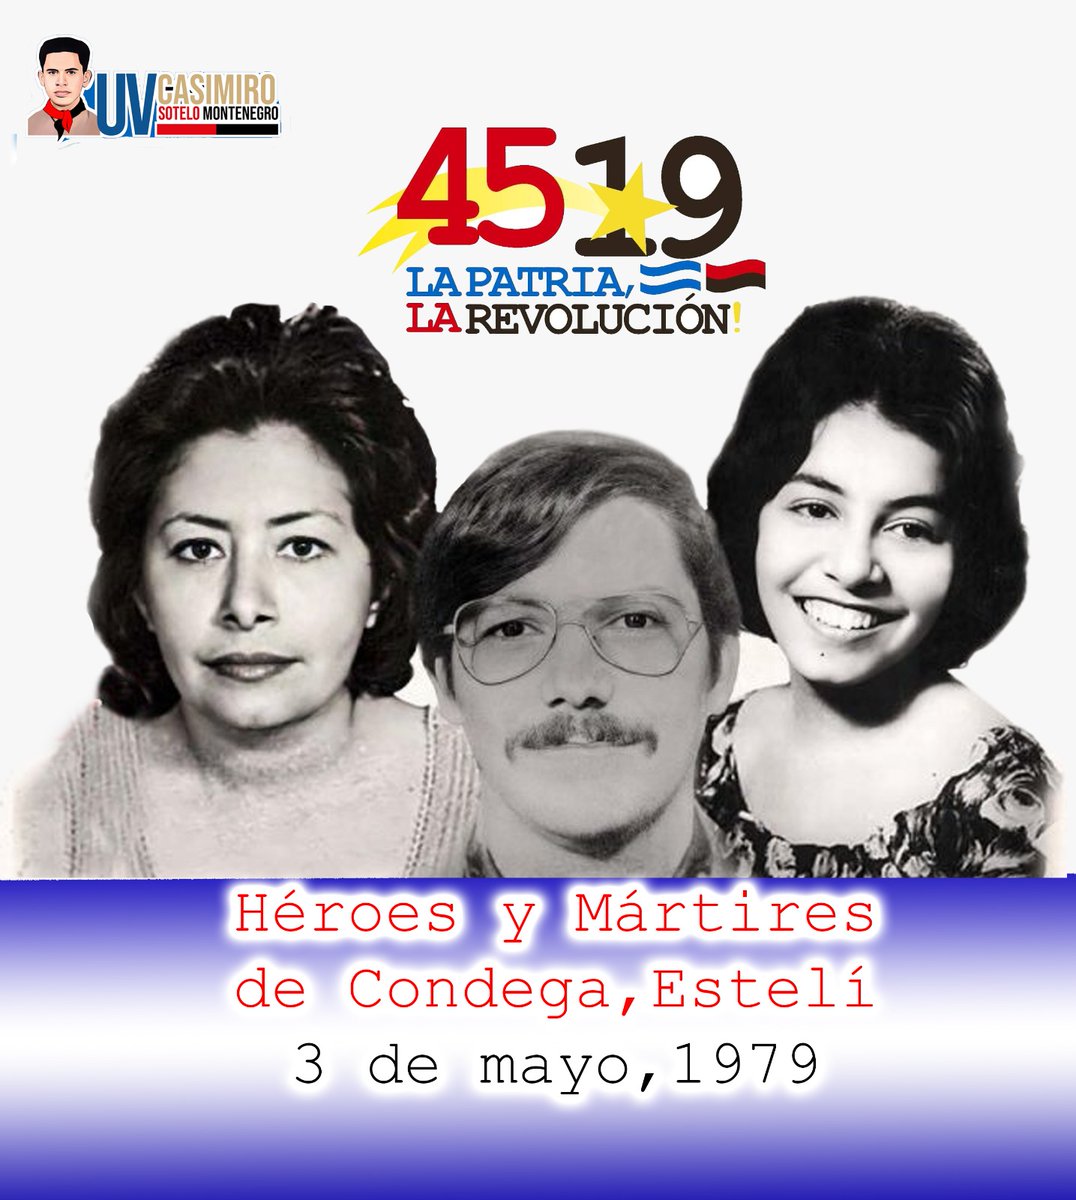 En horas de la madrugada del 3 de mayo de 1979, dos familas fueron ultimadas por sicarios enviados por el dictador Anastasio Somoza, ambas familias colaboraban con el #FSLN #Nicaragua #SoberaníaYDignidadNacional #4519LaPatriaLaRevolución #SomosUNCSM